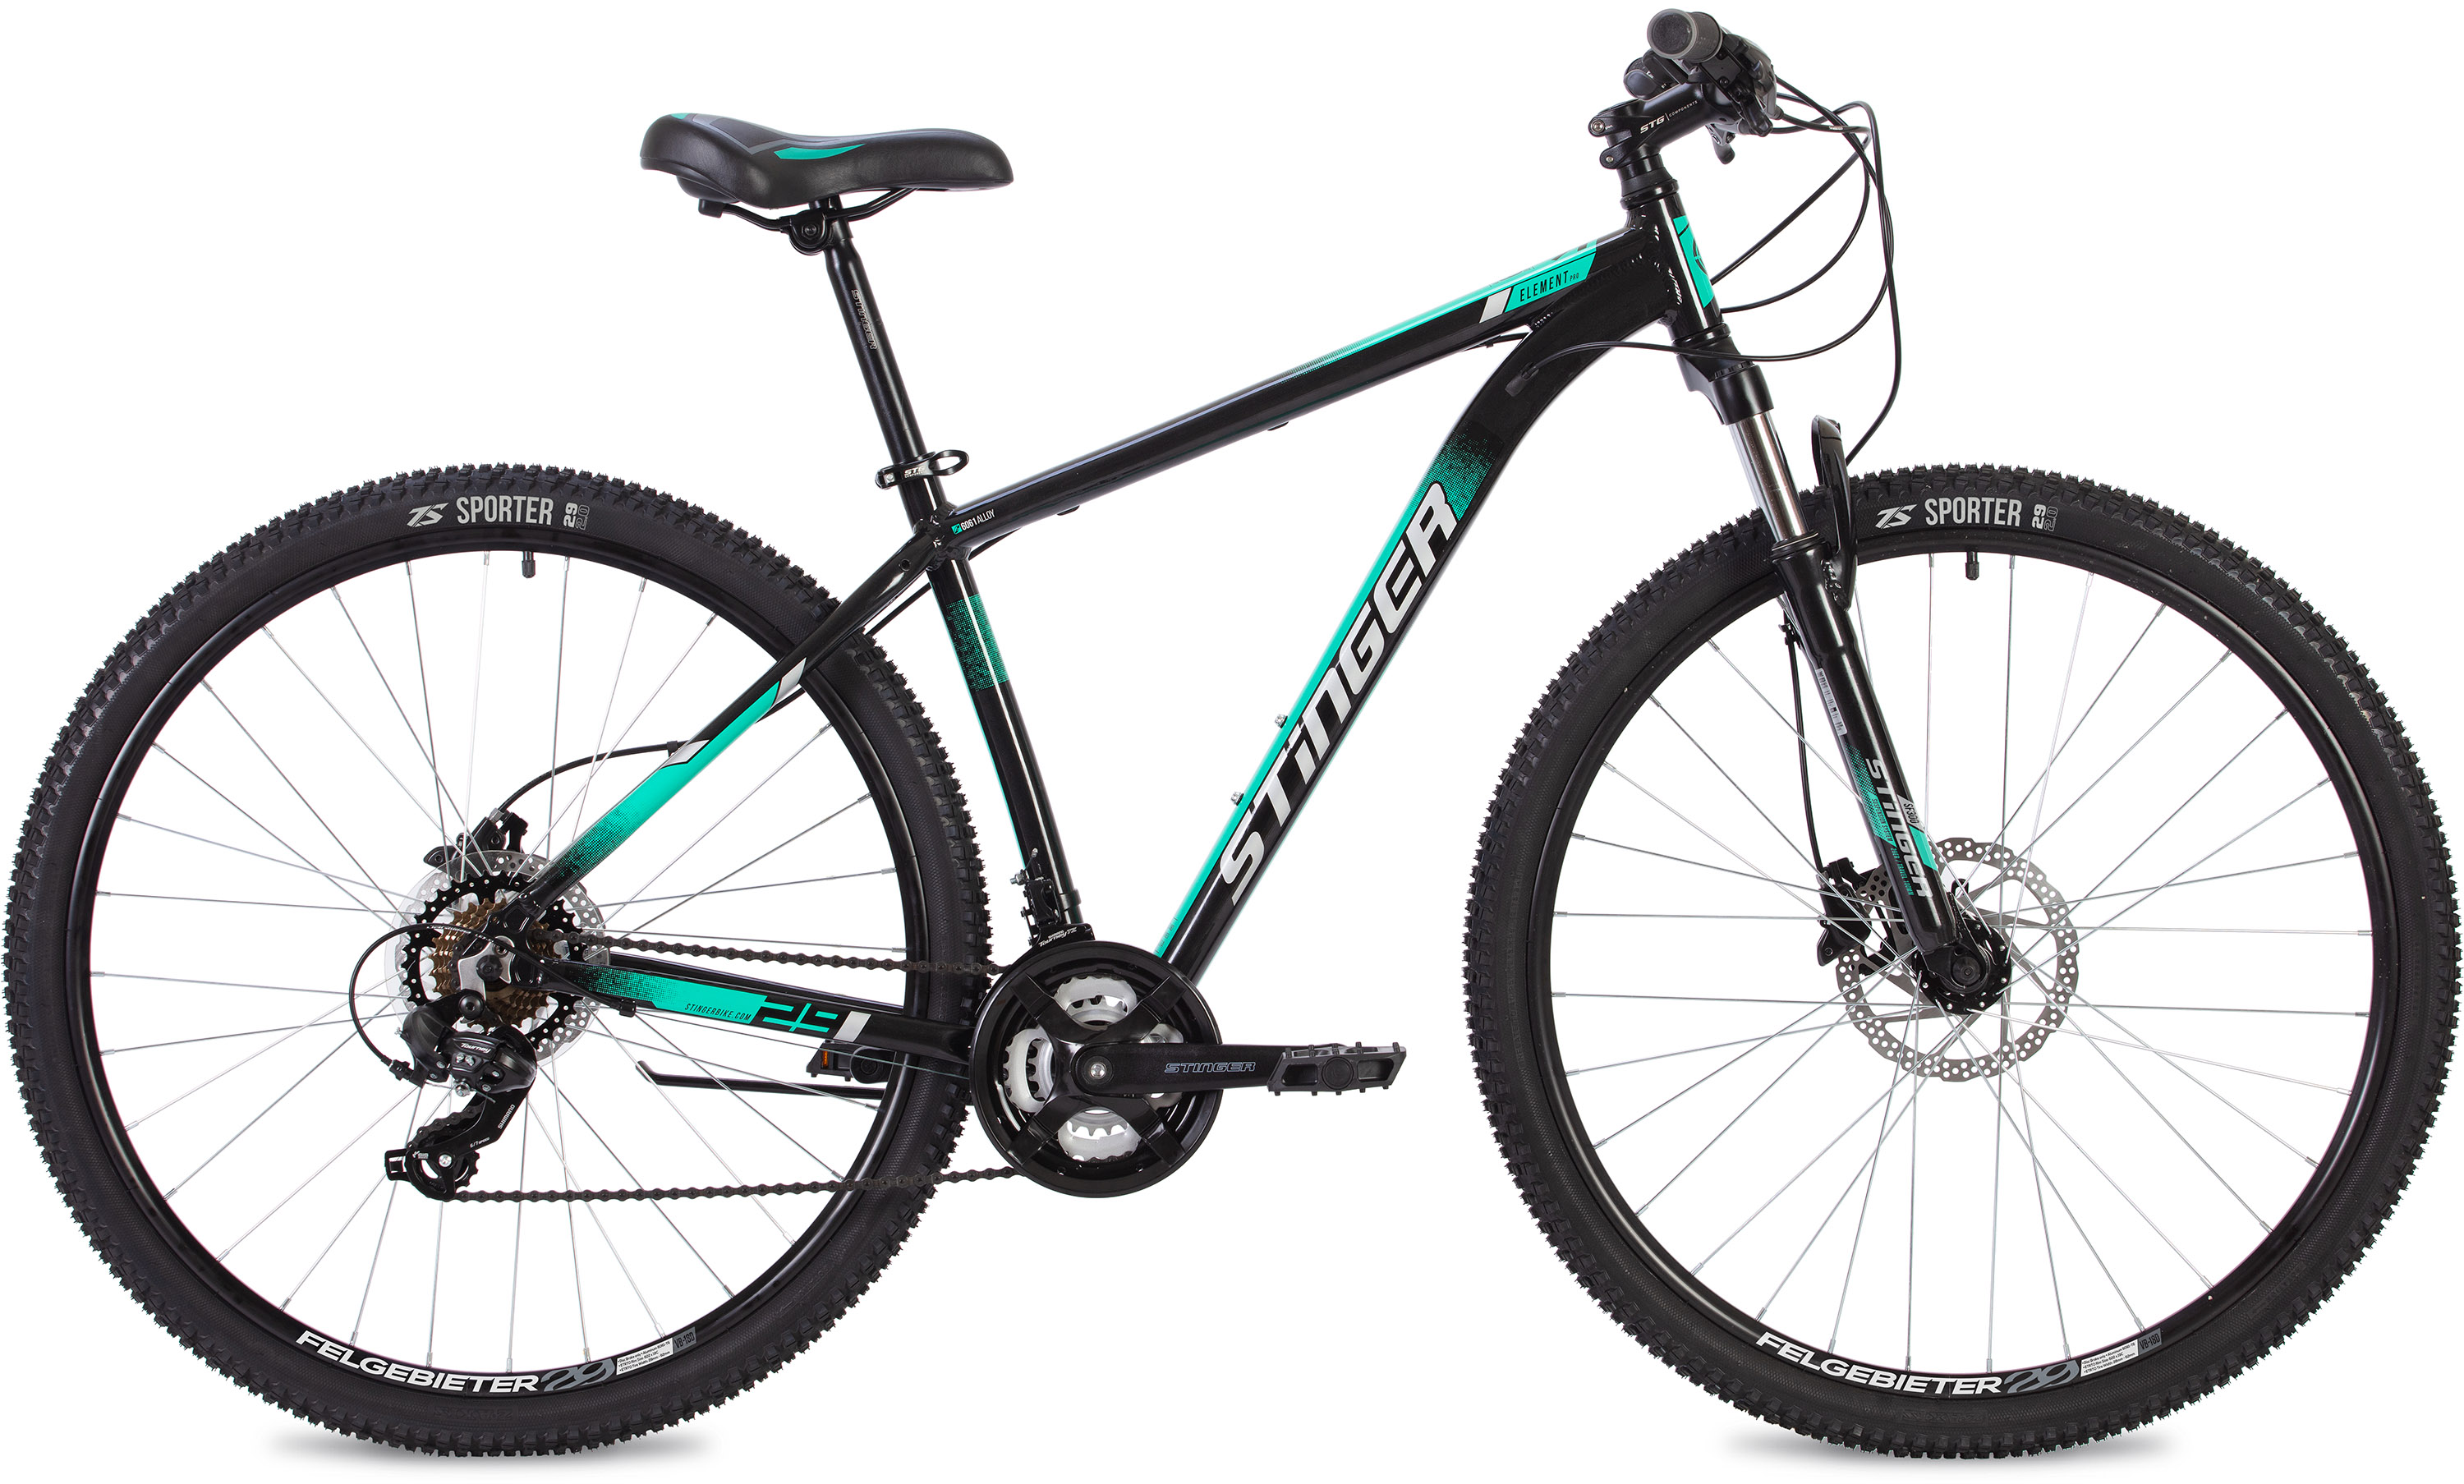  Отзывы о Горном велосипеде Stinger Element Pro 26 2020